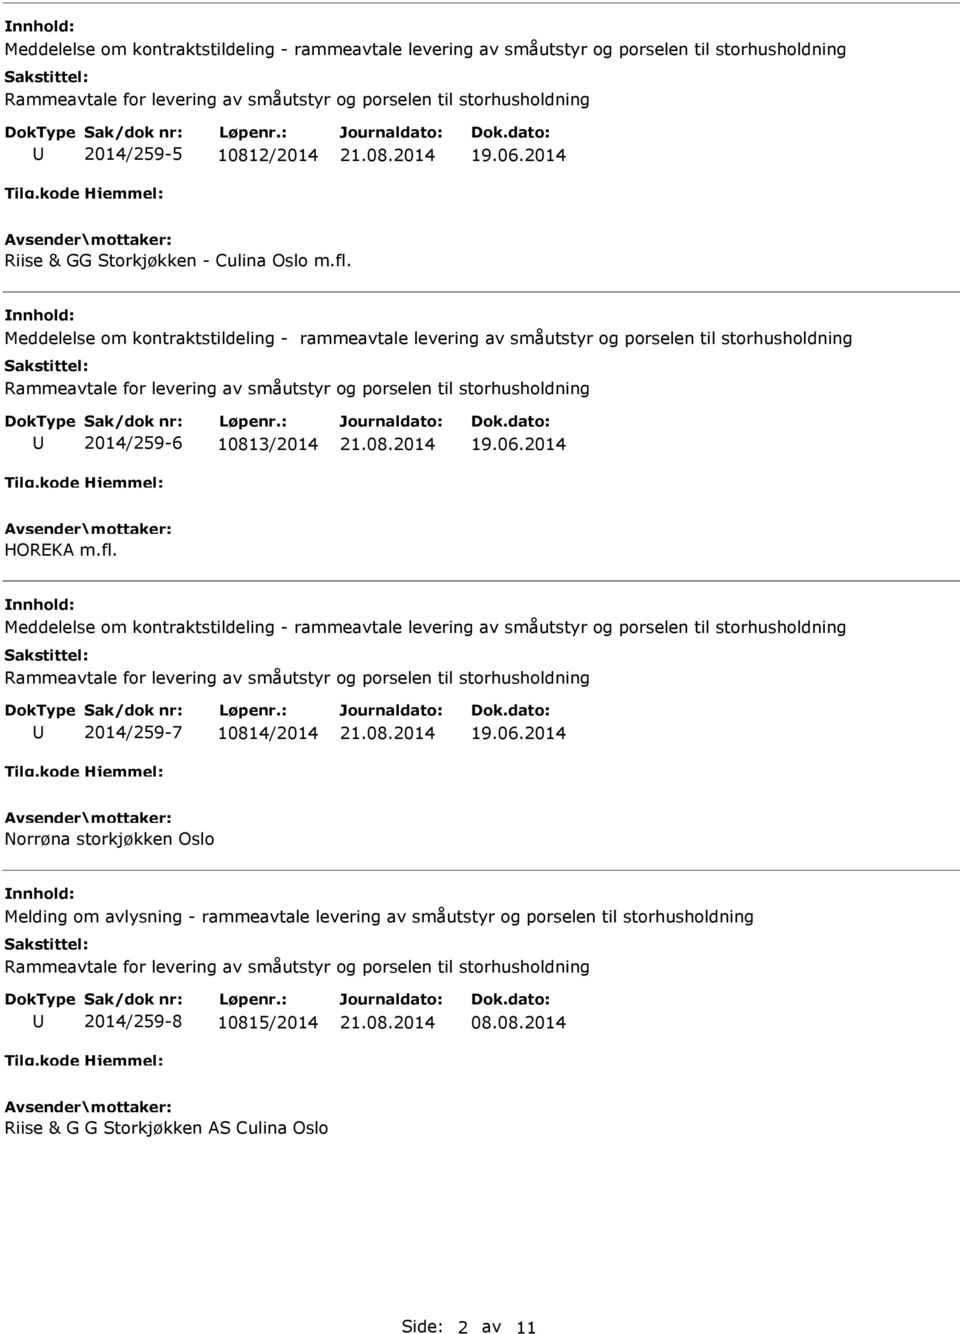 Meddelelse om kontraktstildeling - rammeavtale levering av småutstyr og porselen til storhusholdning 2014/259-6 10813/2014 19.06.2014 HOREKA m.fl.